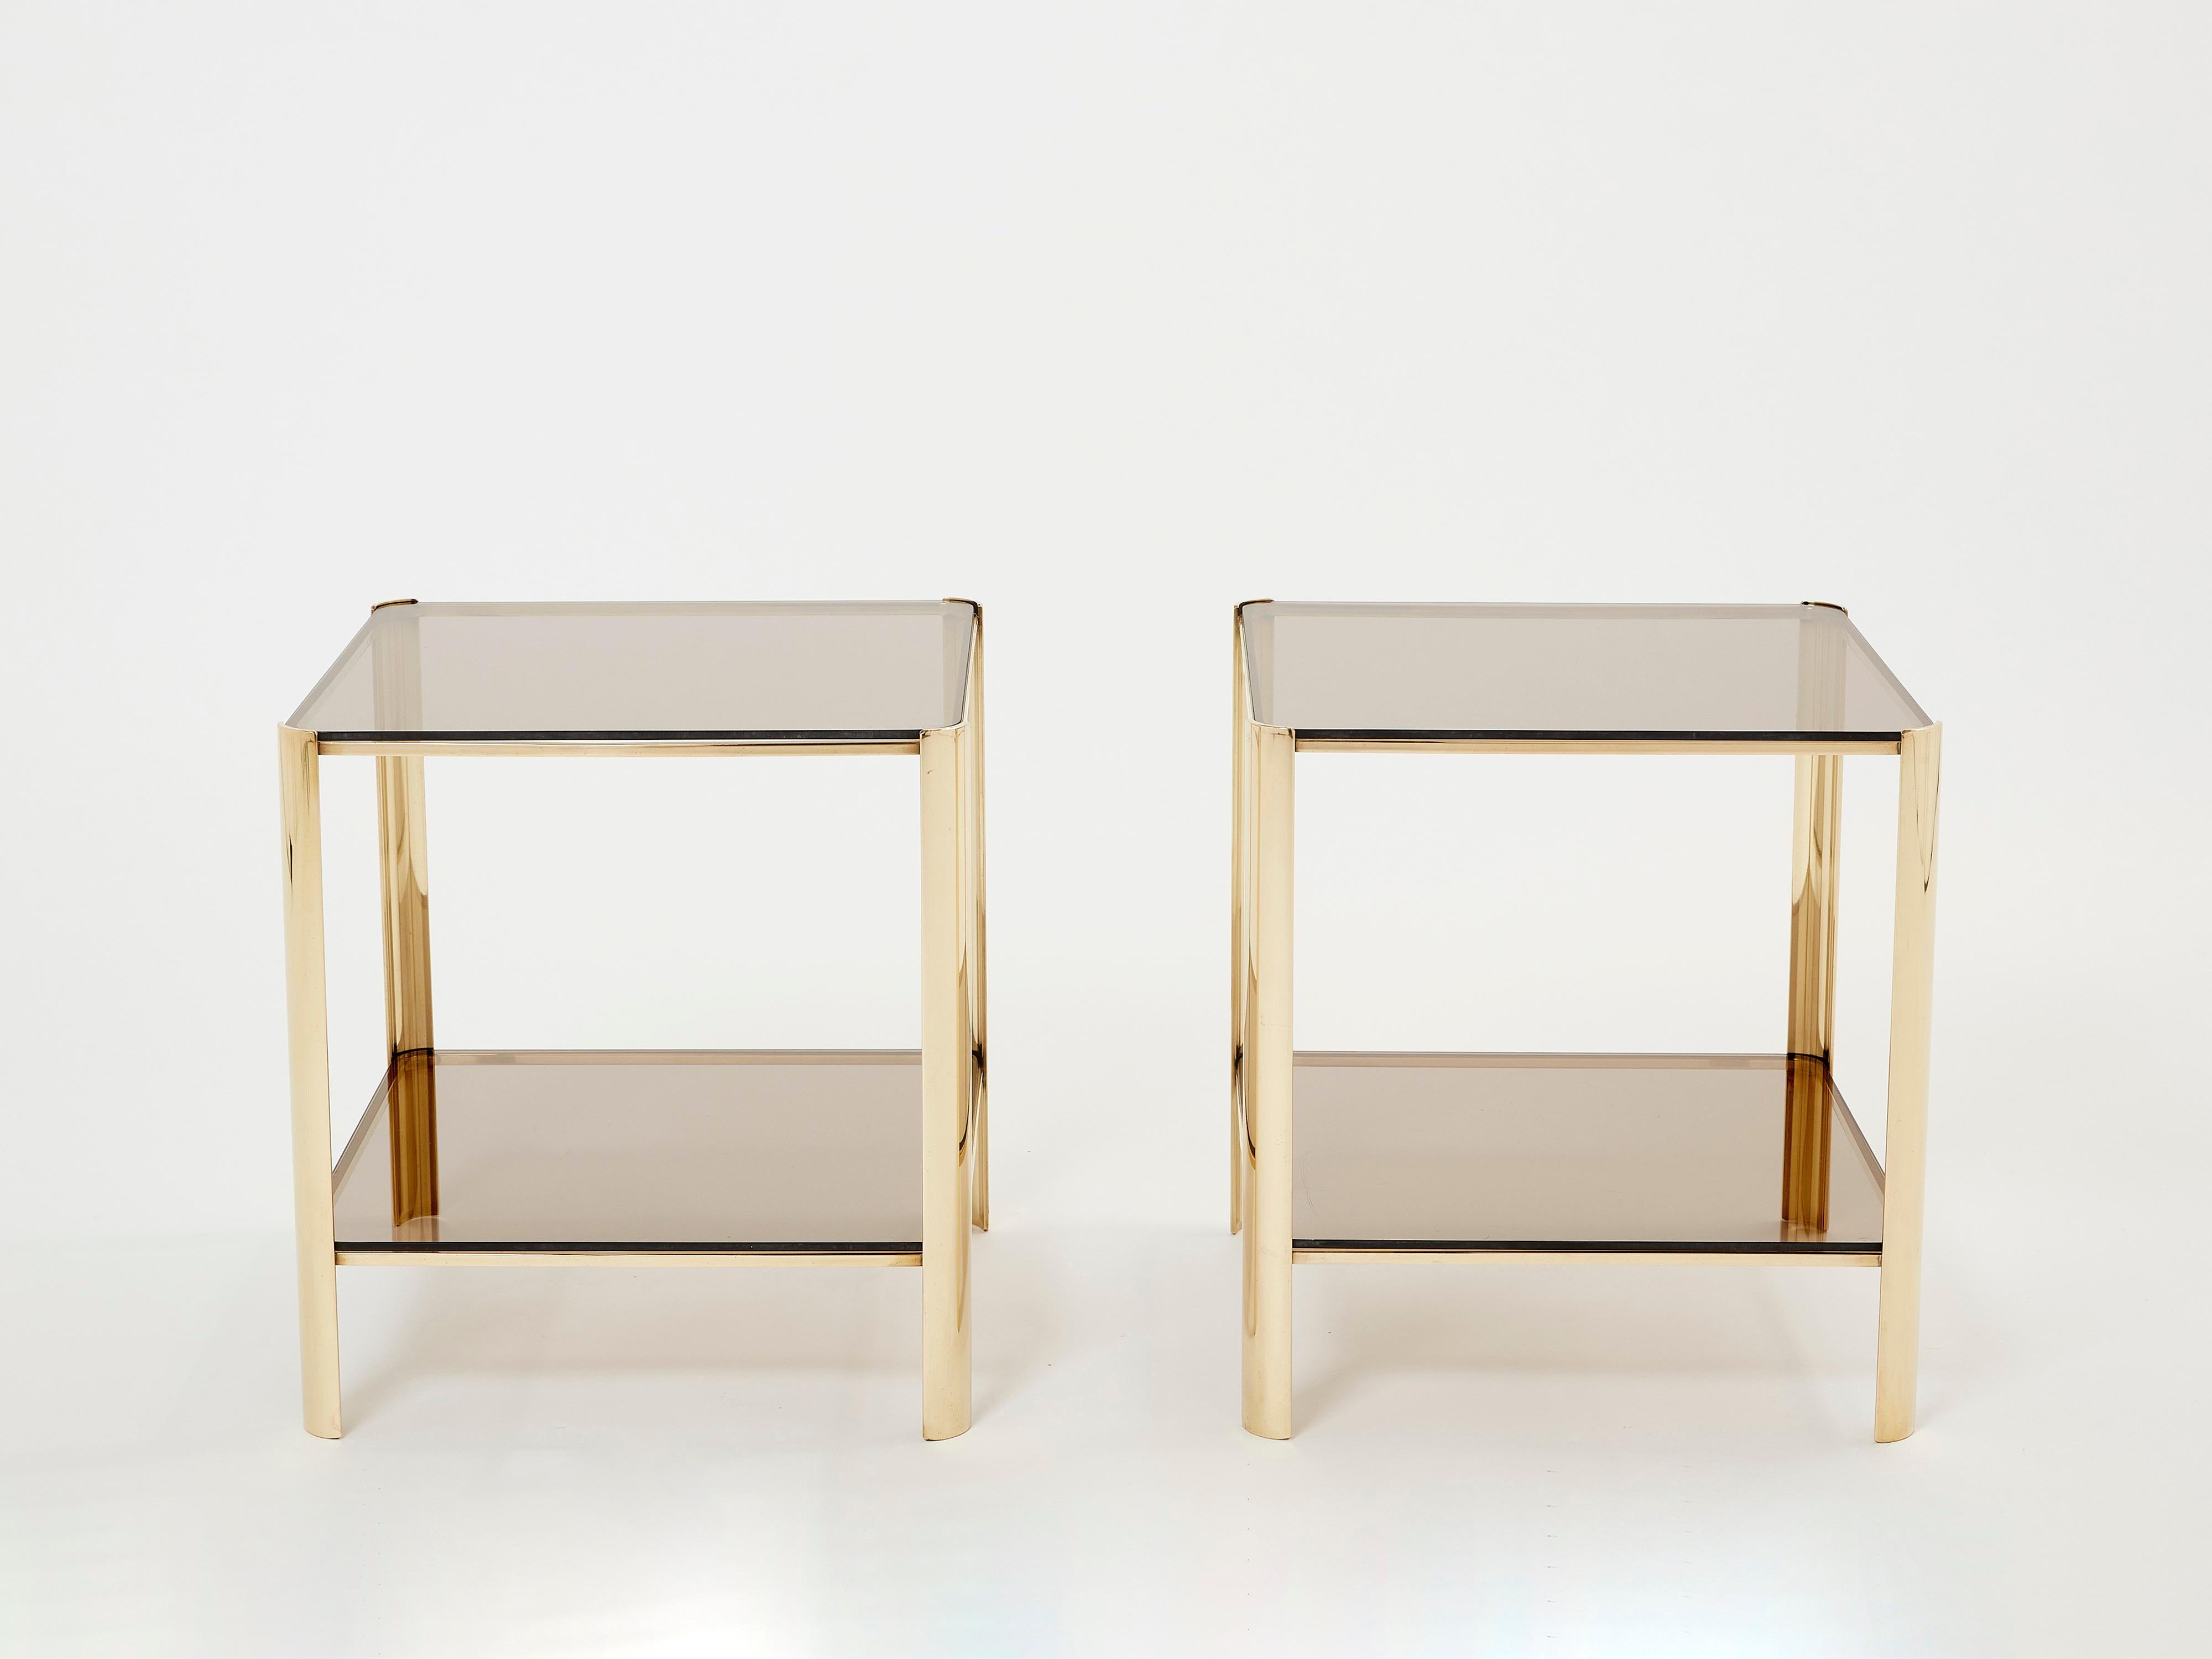 Cette magnifique paire de tables d'appoint à deux niveaux, signée par Jacques Quinet et estampillée par Broncz, est une découverte remarquable. Ils sont dotés d'une structure en bronze solide et résistante, conçue pour durer éternellement. Les